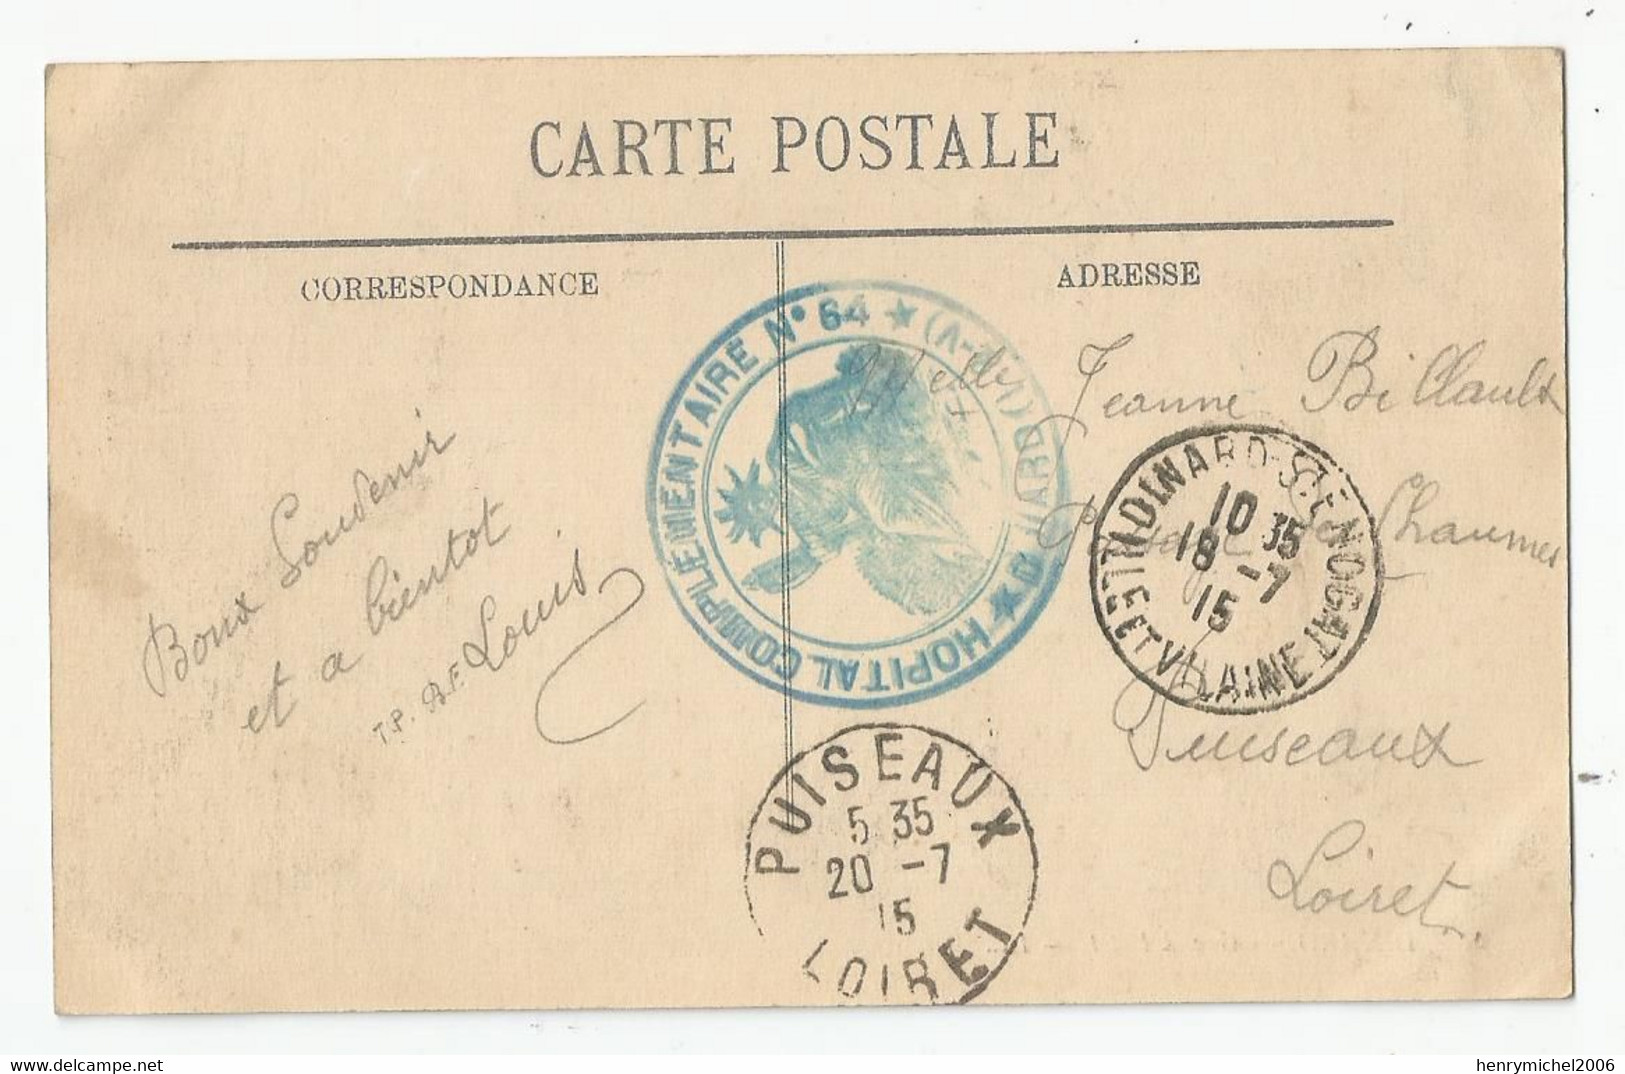 Marcophilie Cachet Hopital Complémentaire N64 Dinard 35 Pour Puiseaux Loiret 45 - 1915 - WW I